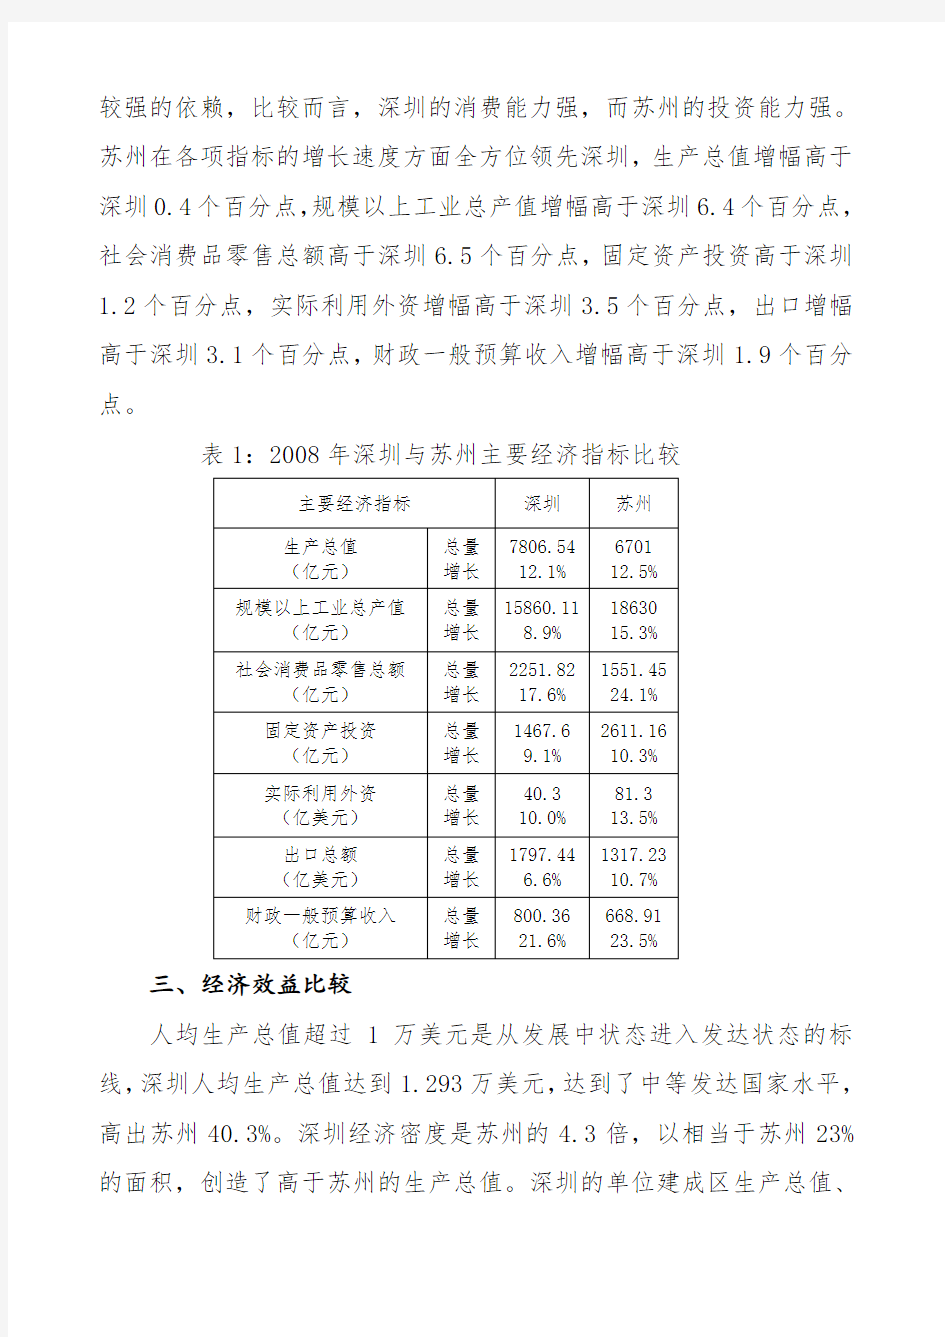 深圳和苏州经济发展的比较分析深圳和苏州经济发展的